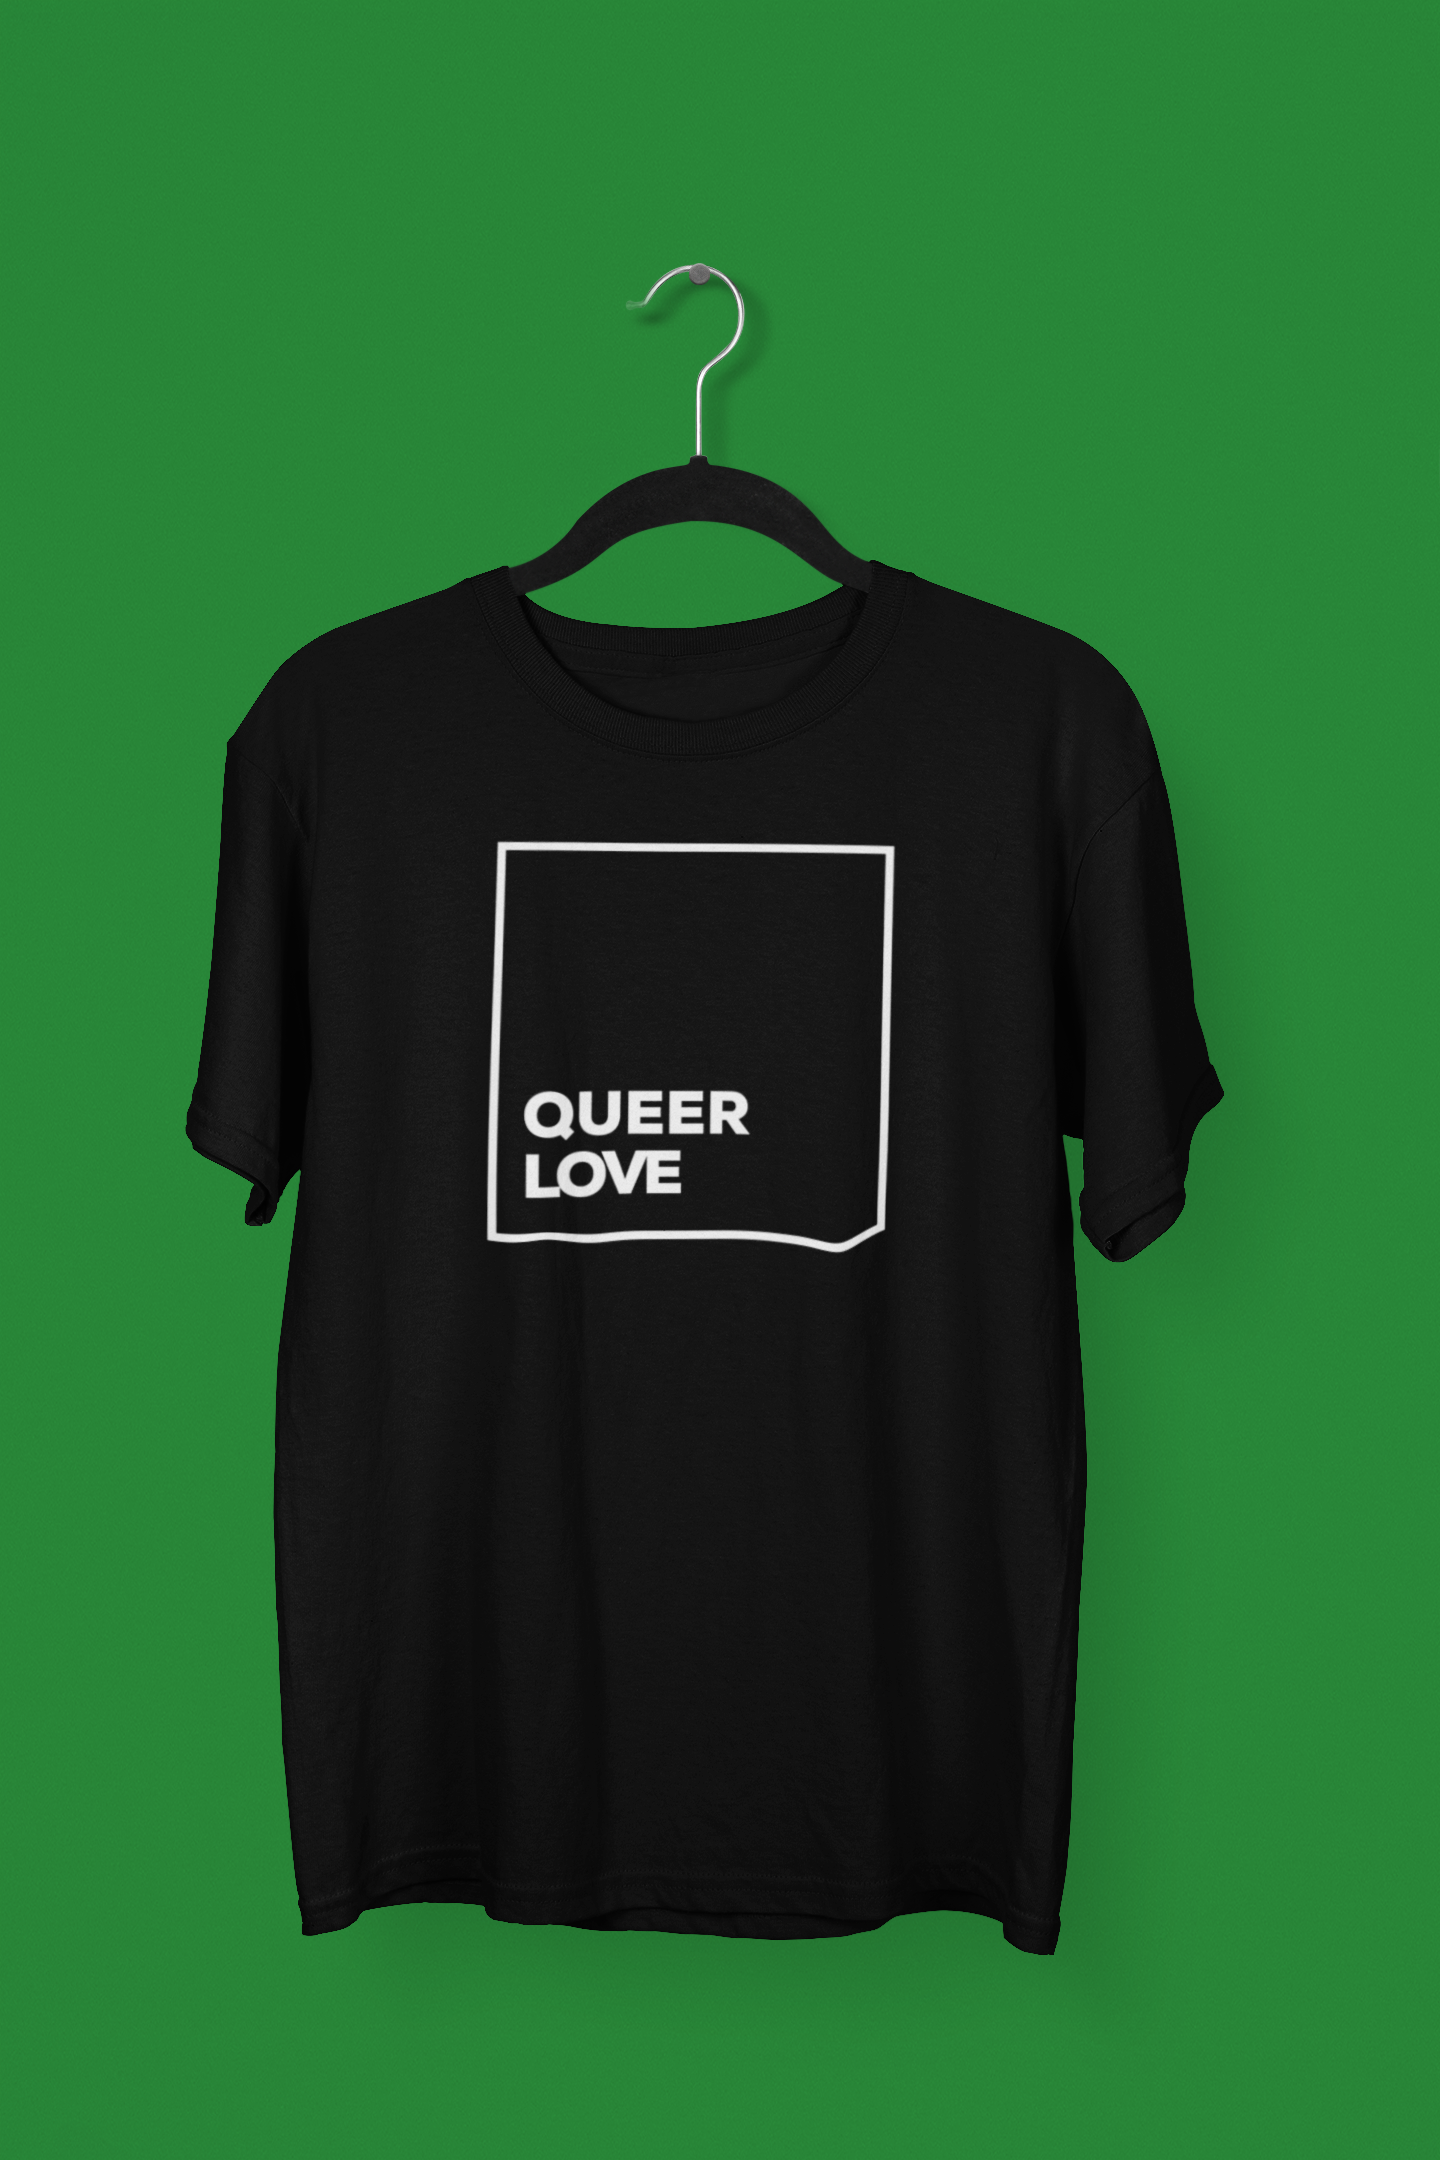 Queer Love Tee